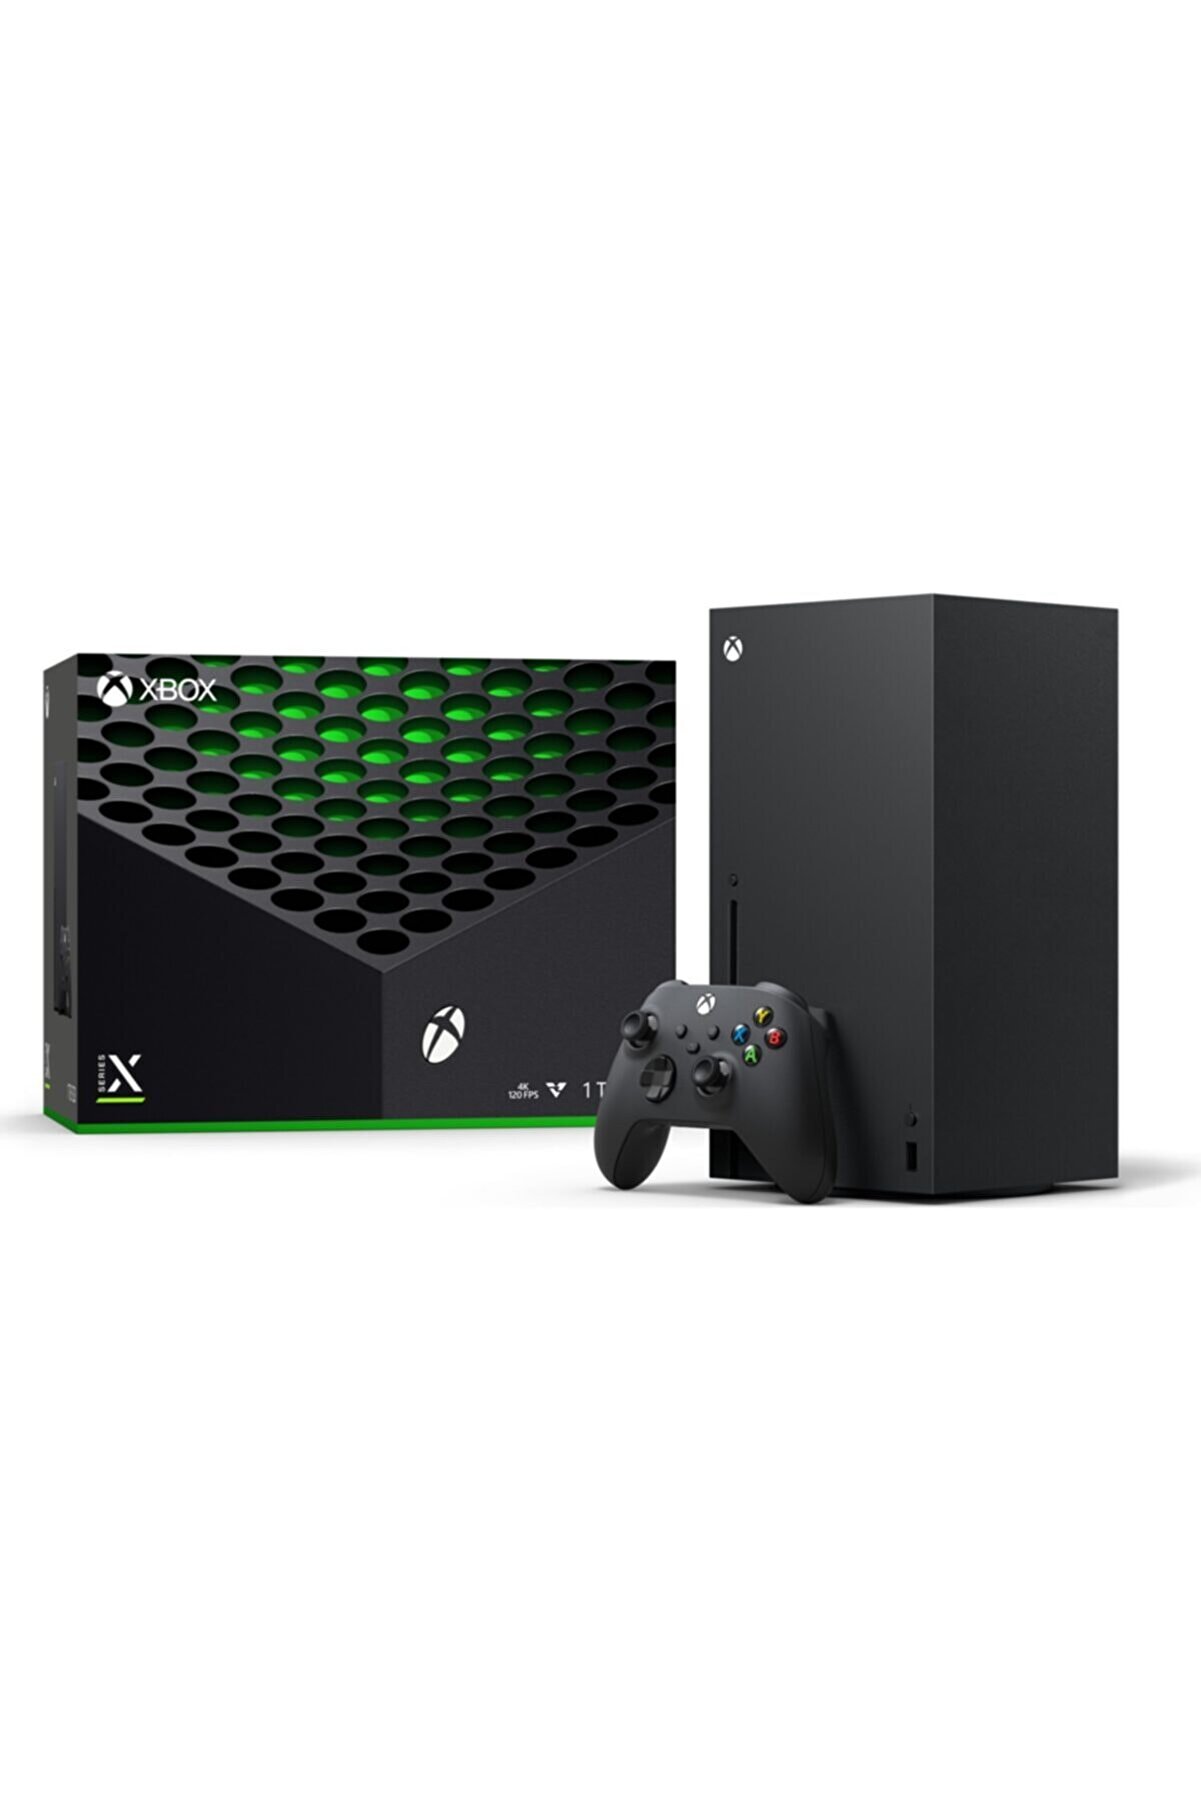 Microsoft Xbox Series X 1 TB Oyun Konsolu - Siyah (İthalatçı Garantili)